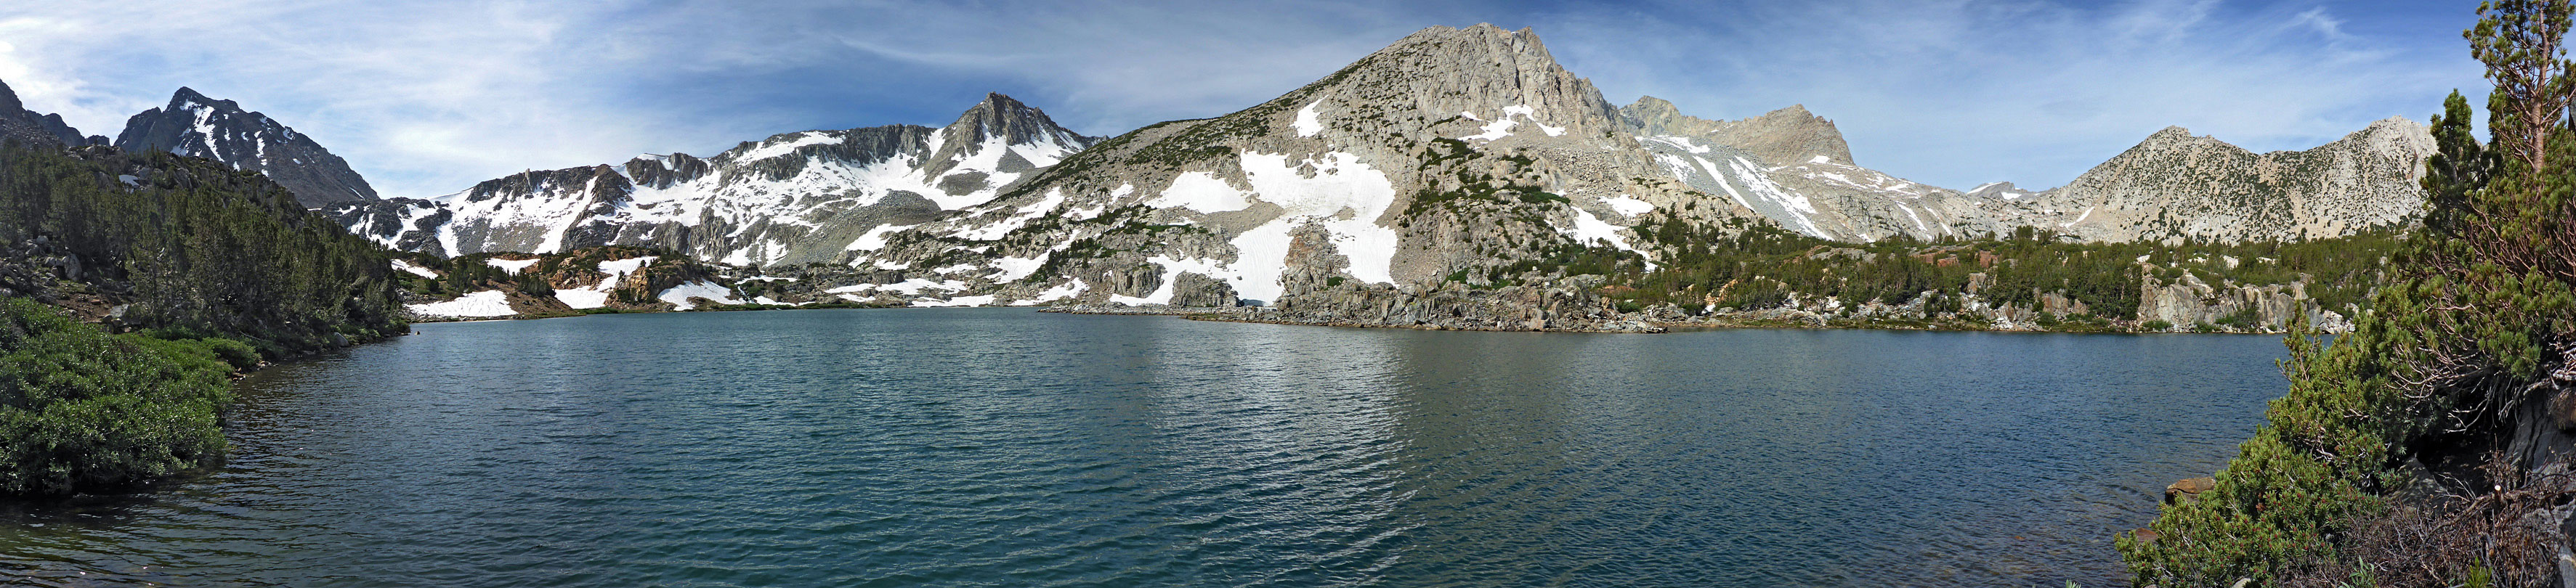 Panorama of Saddlerock Lake